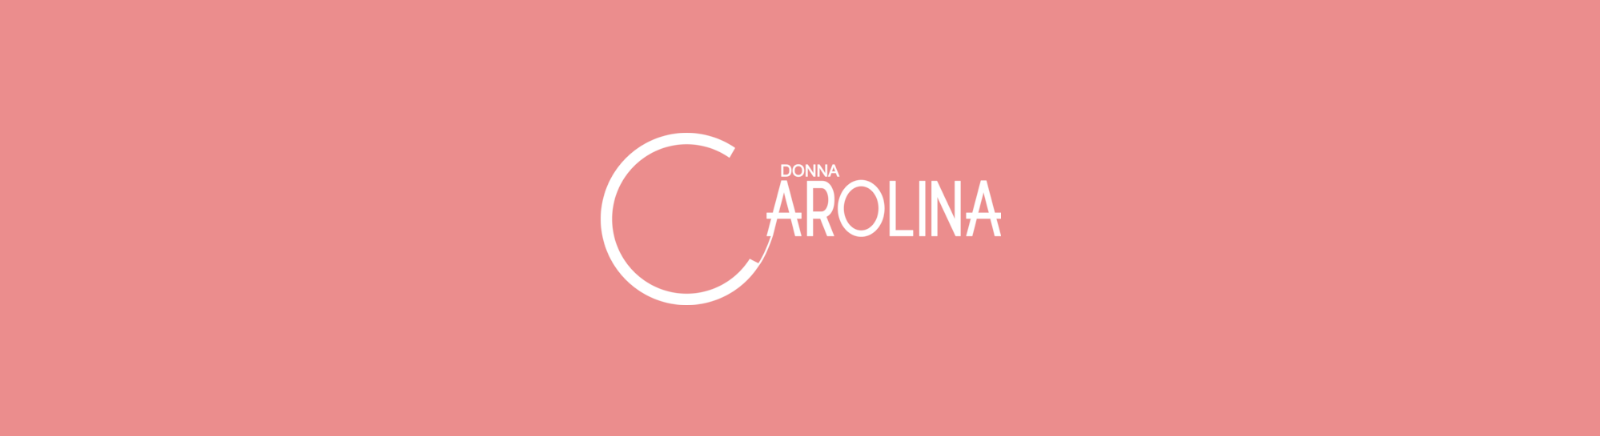 Juppen: Donna Carolina Ballerinas für Damen kaufen online shoppen